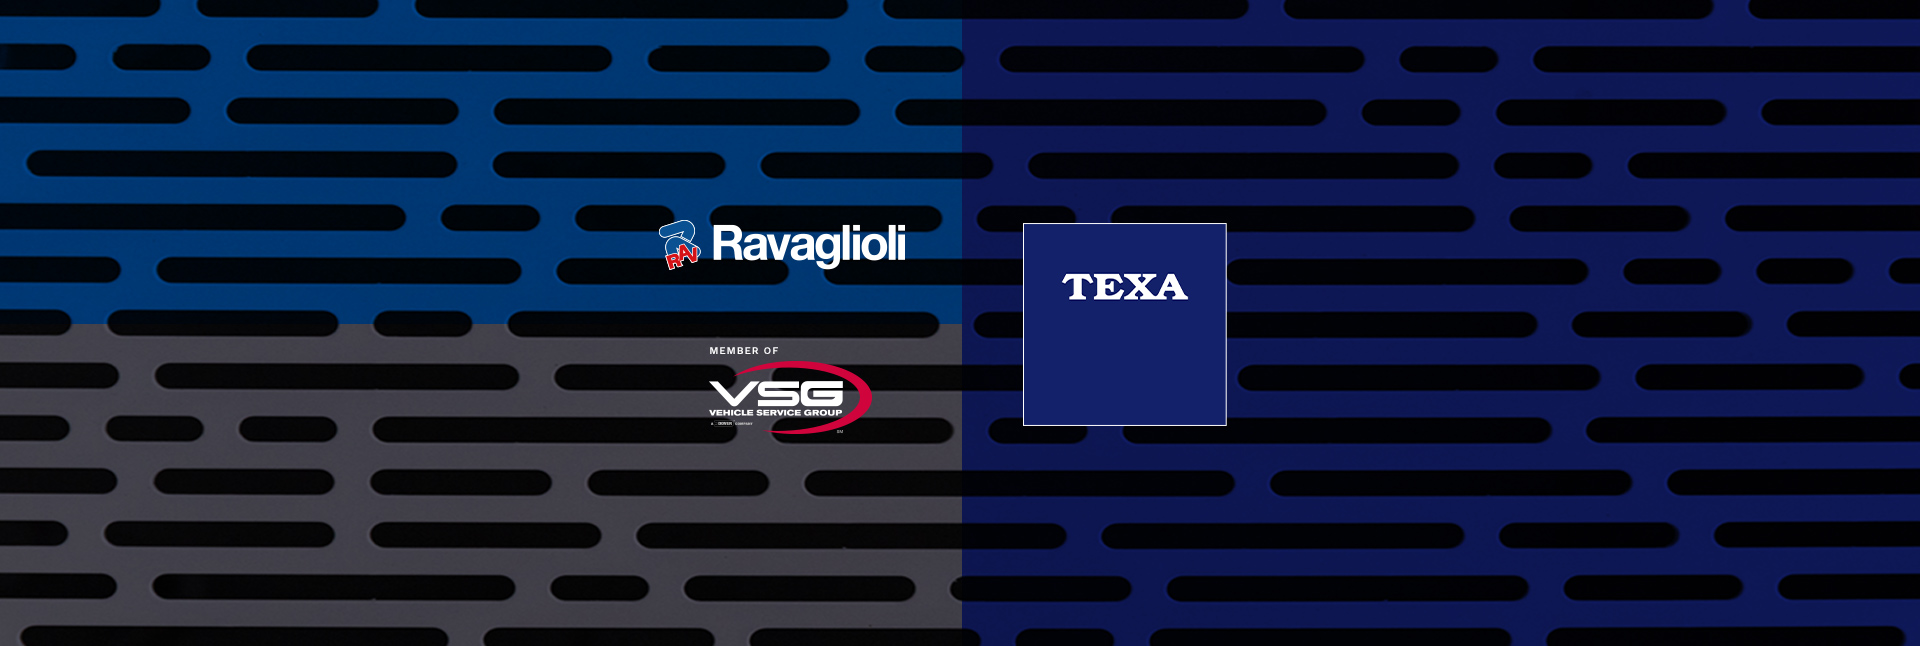 Neue Kollaboration zwischen Ravaglioli und TEXA